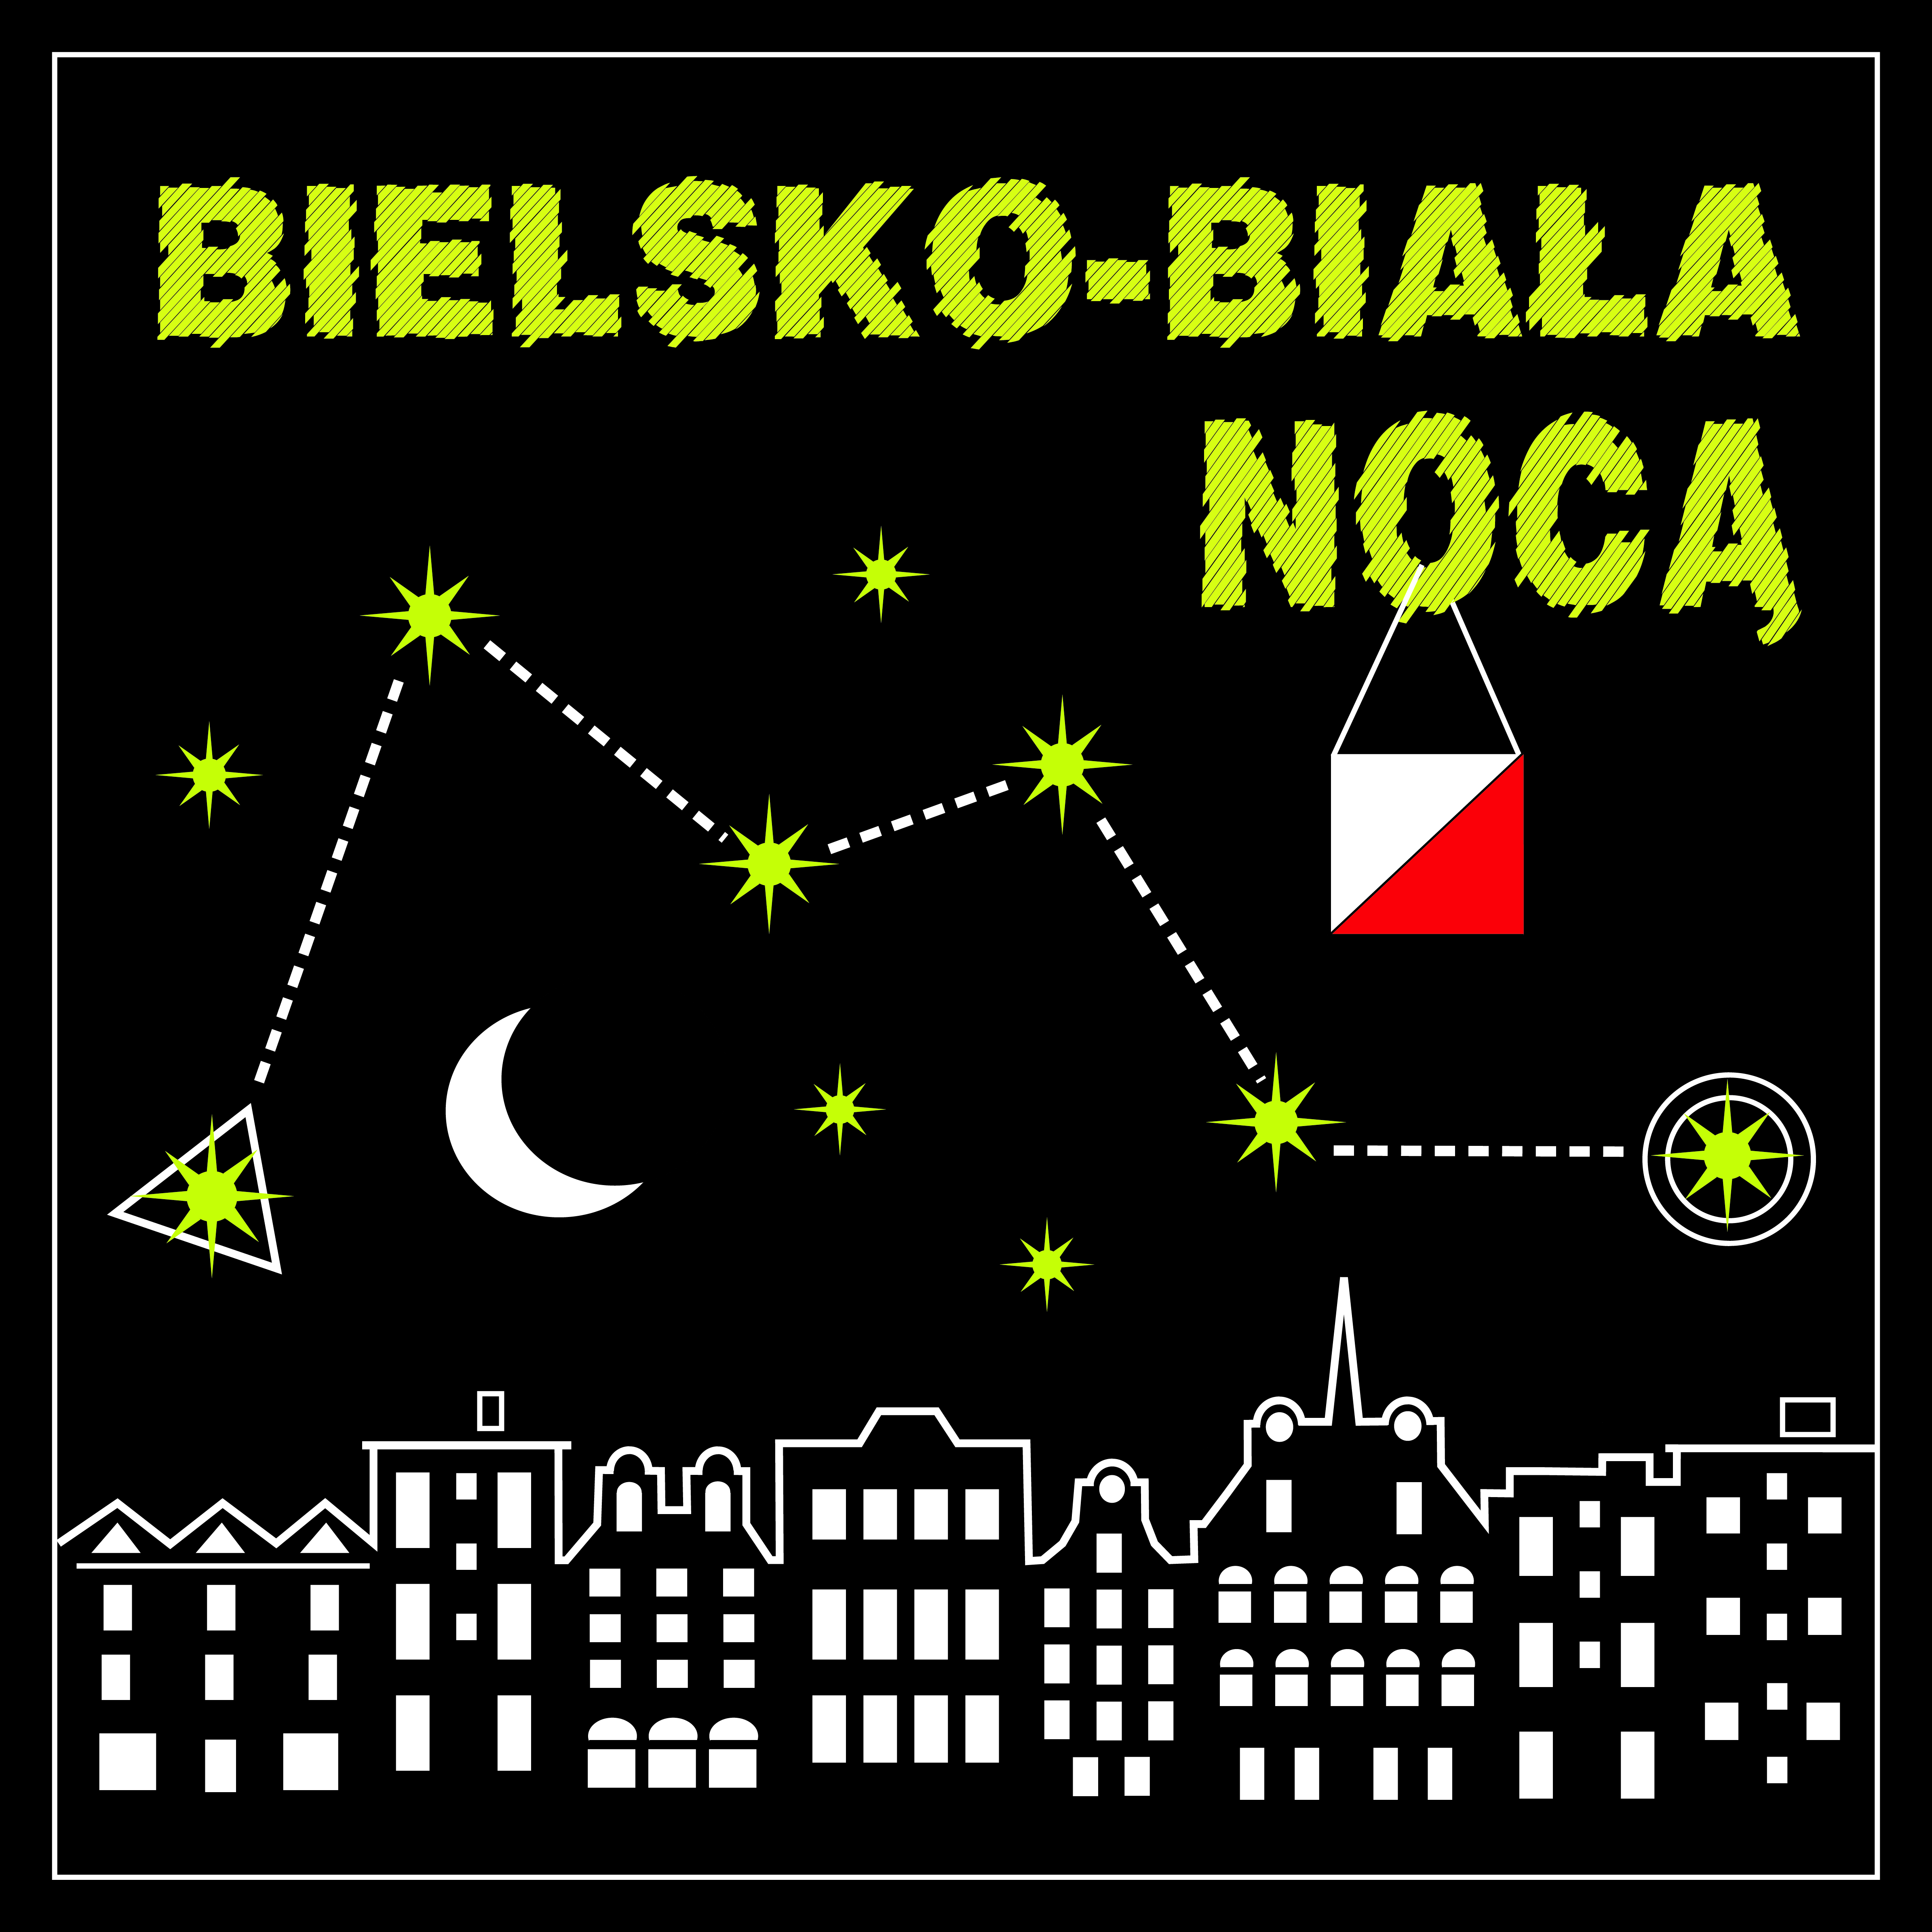  Bielsko-Biała nocą Na zdjęciu plakat imprezy